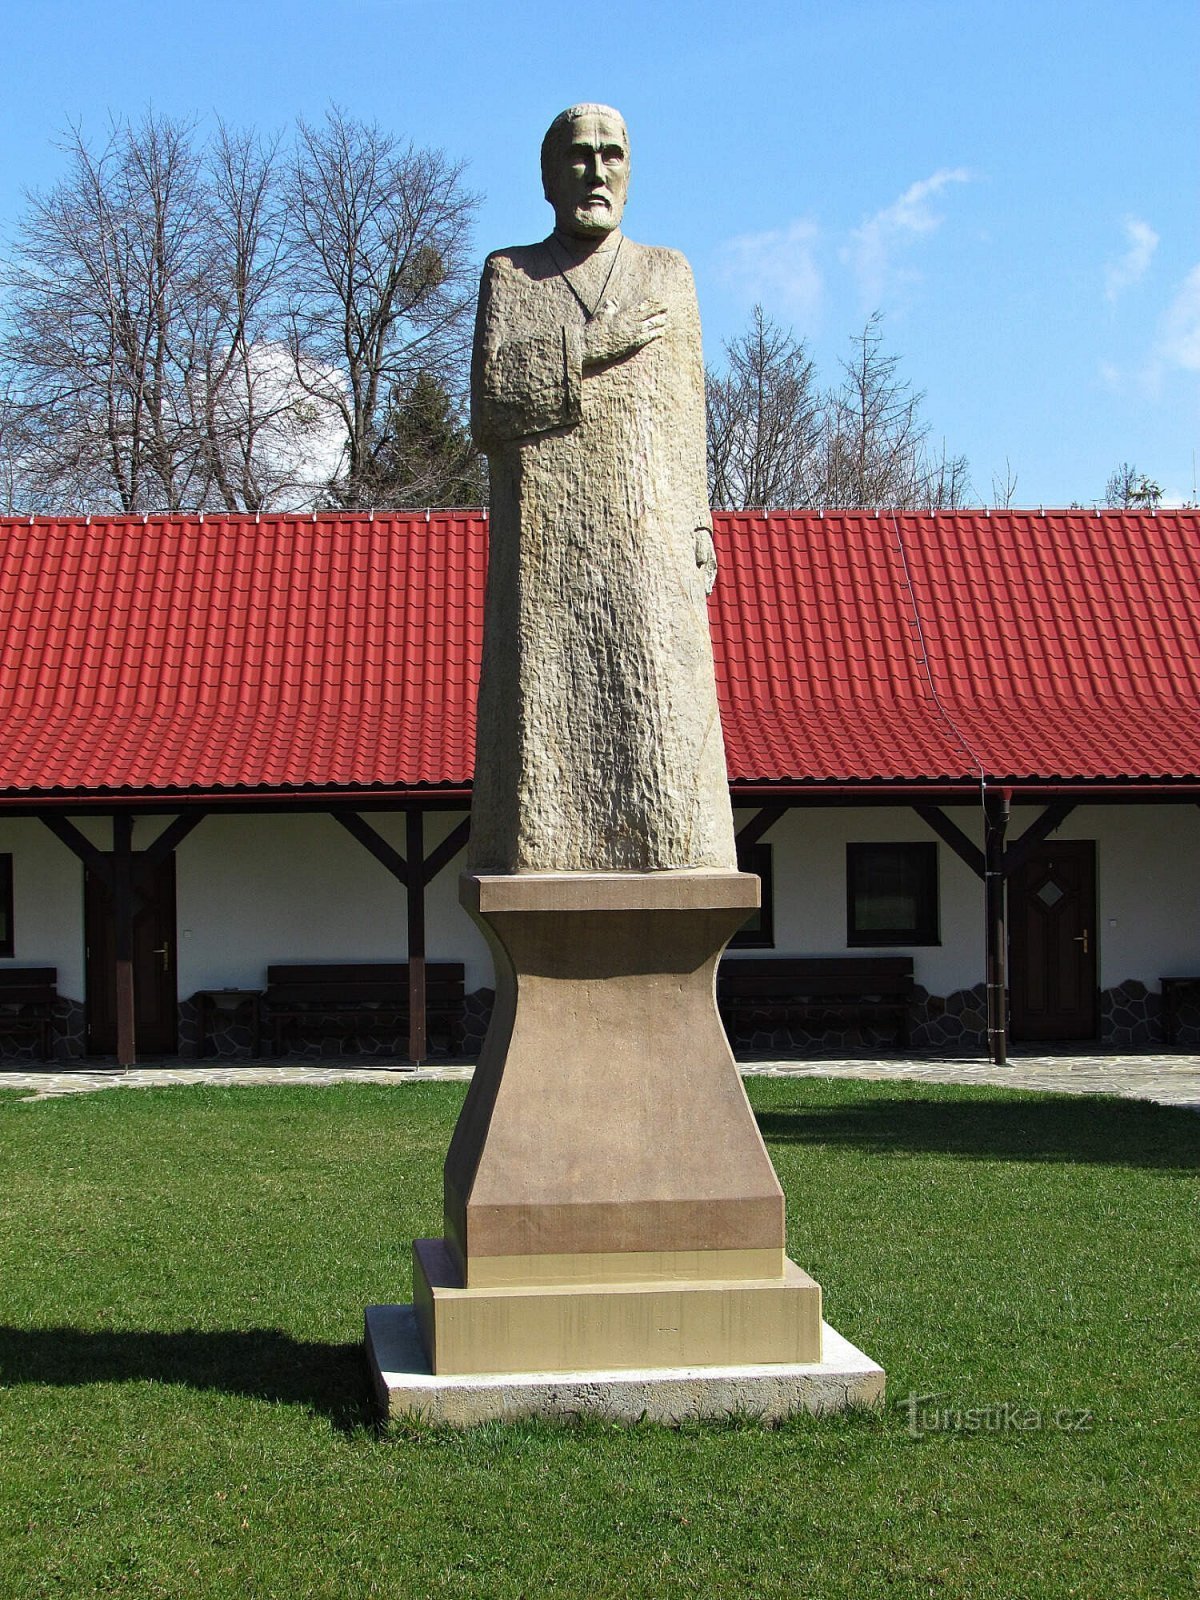 Prženské Paseky - Husin patsas ja sokkeli ilman patsasta